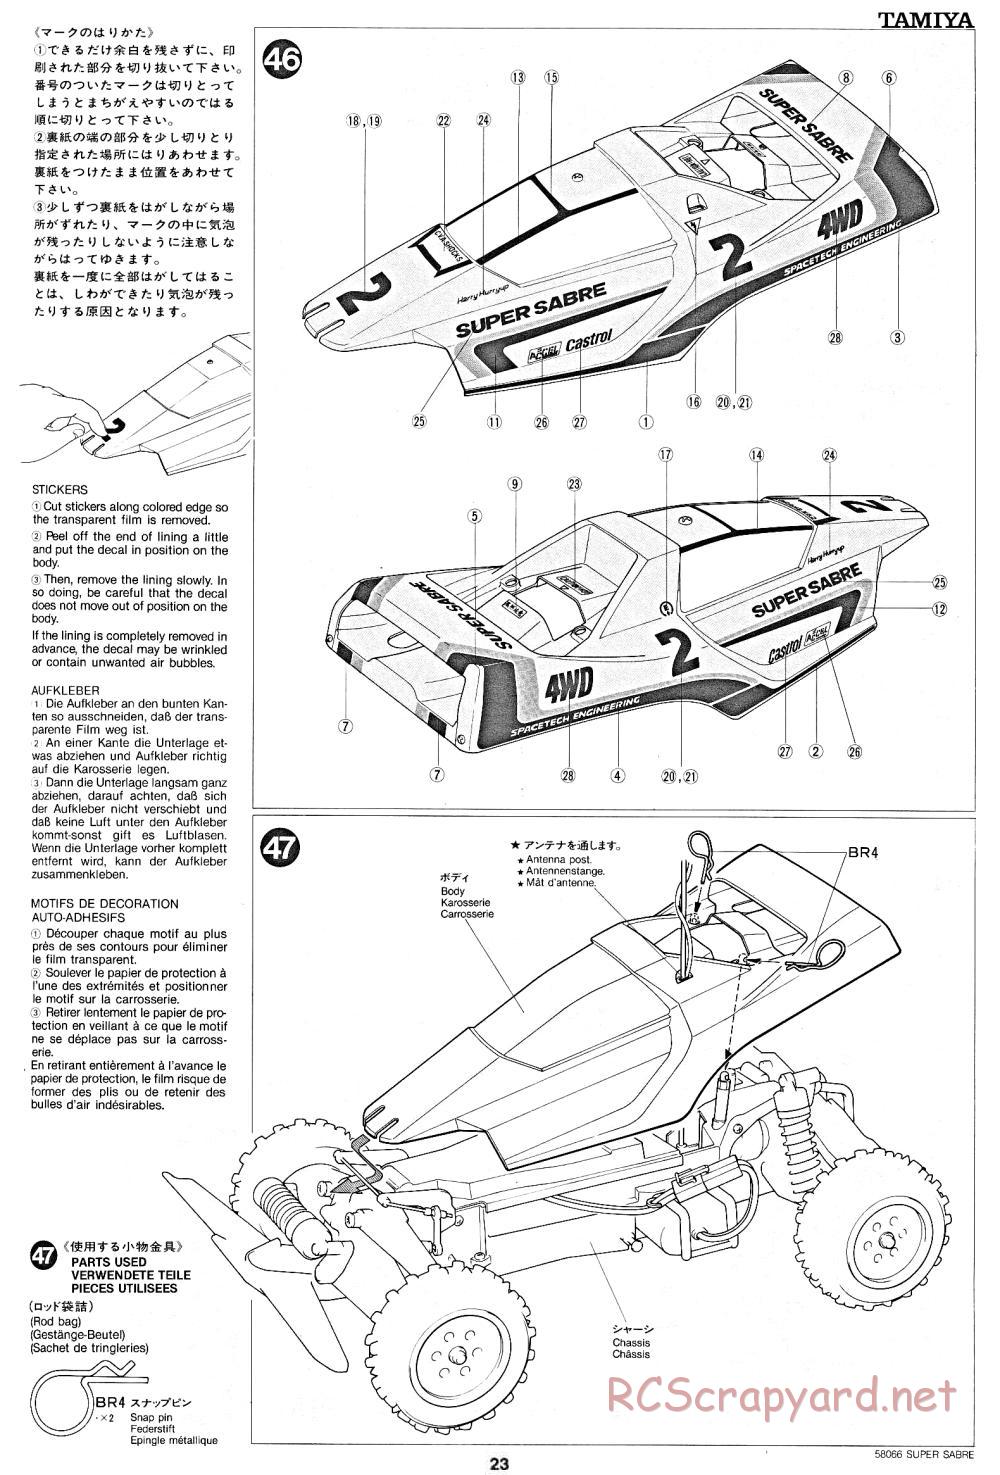 Tamiya - Super Sabre - 58066 - Manual - Page 23